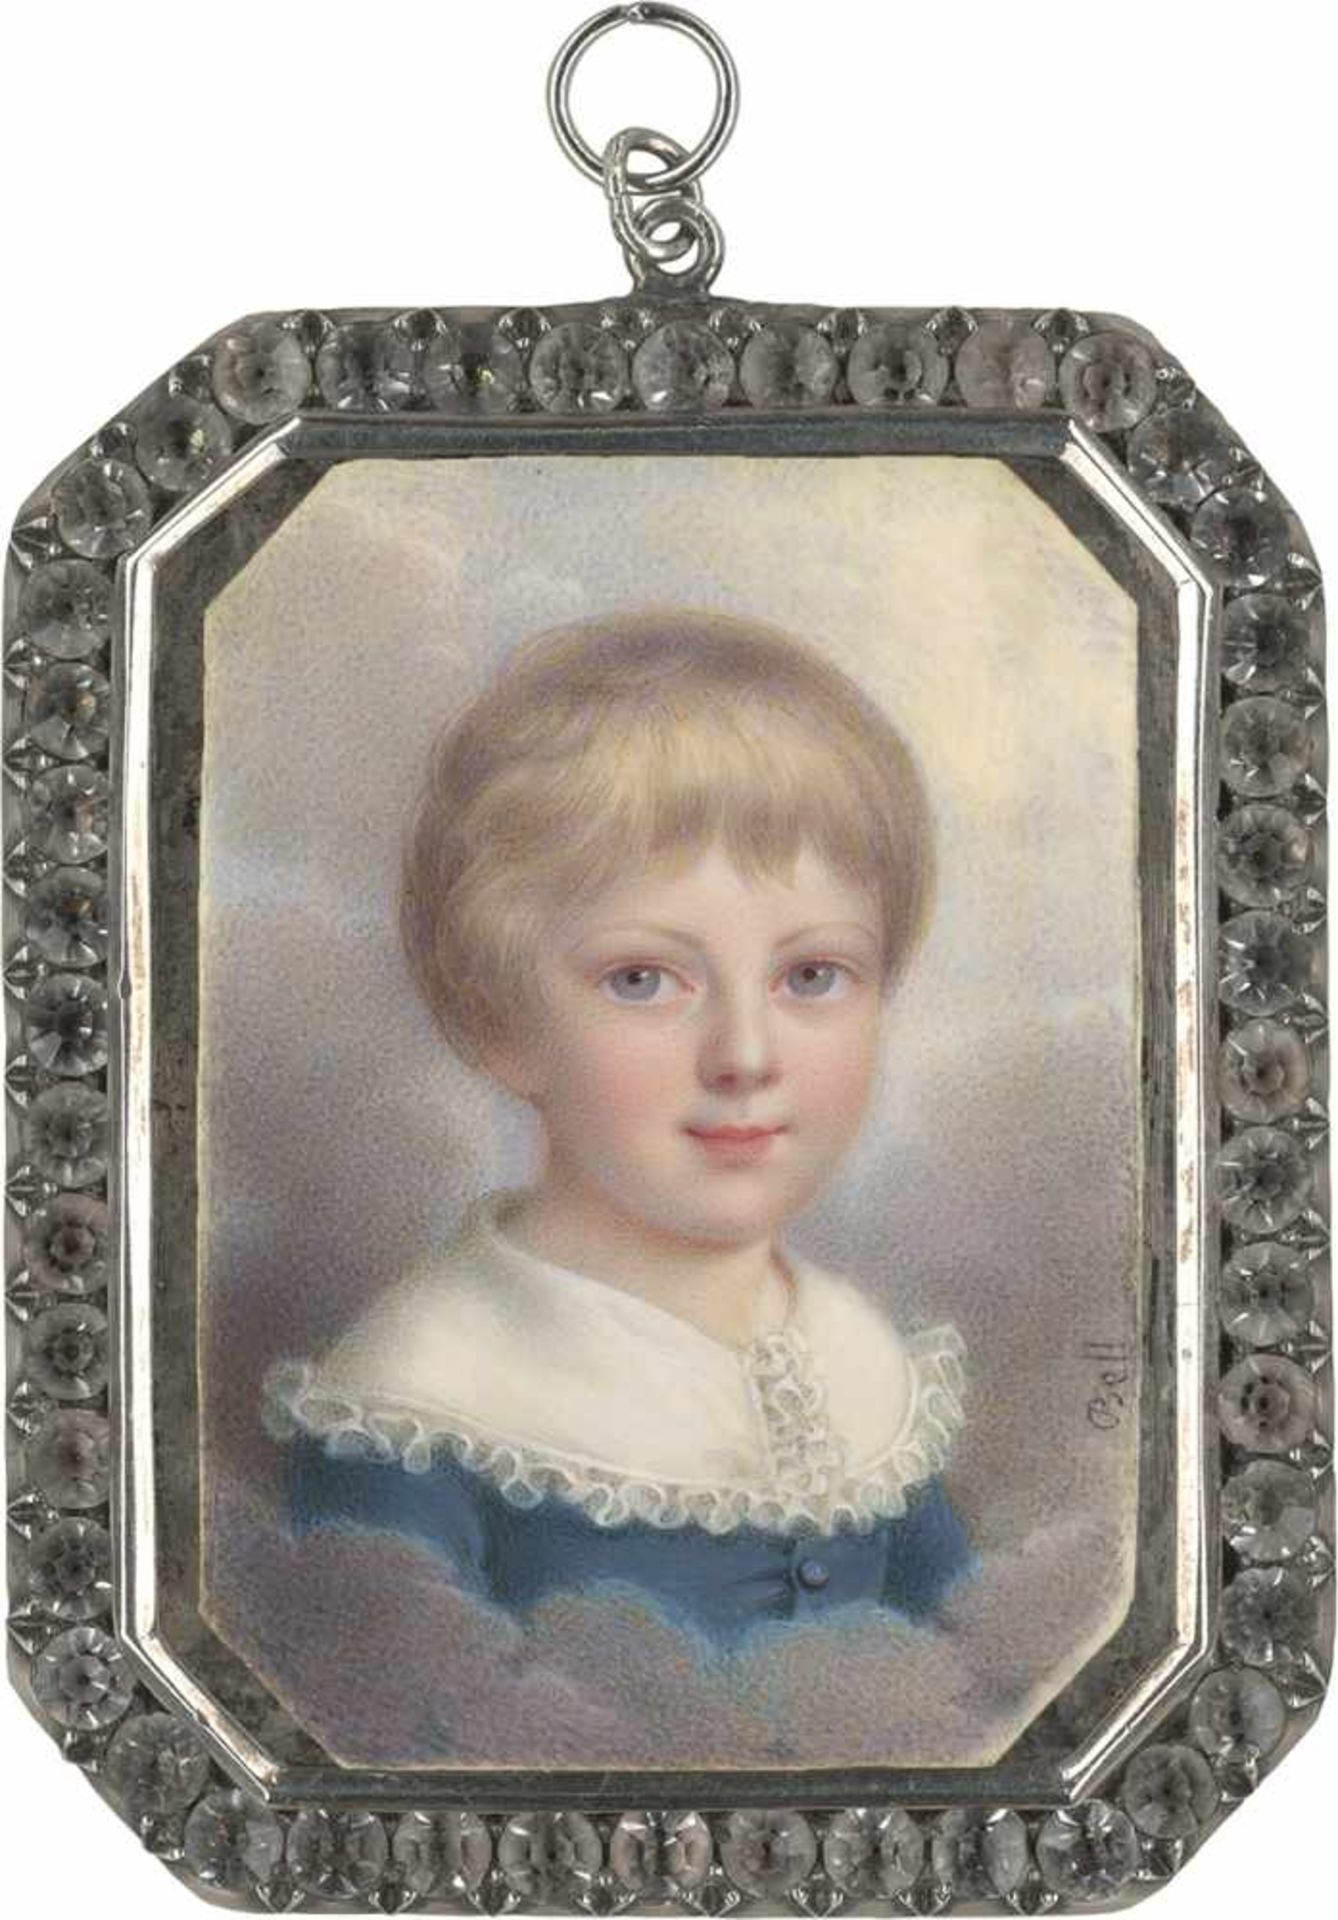 Bell, Rodolphe: Bildnis eines blonden kleinen Jungen umgeben von WolkenBildnis eines blonden kleinen